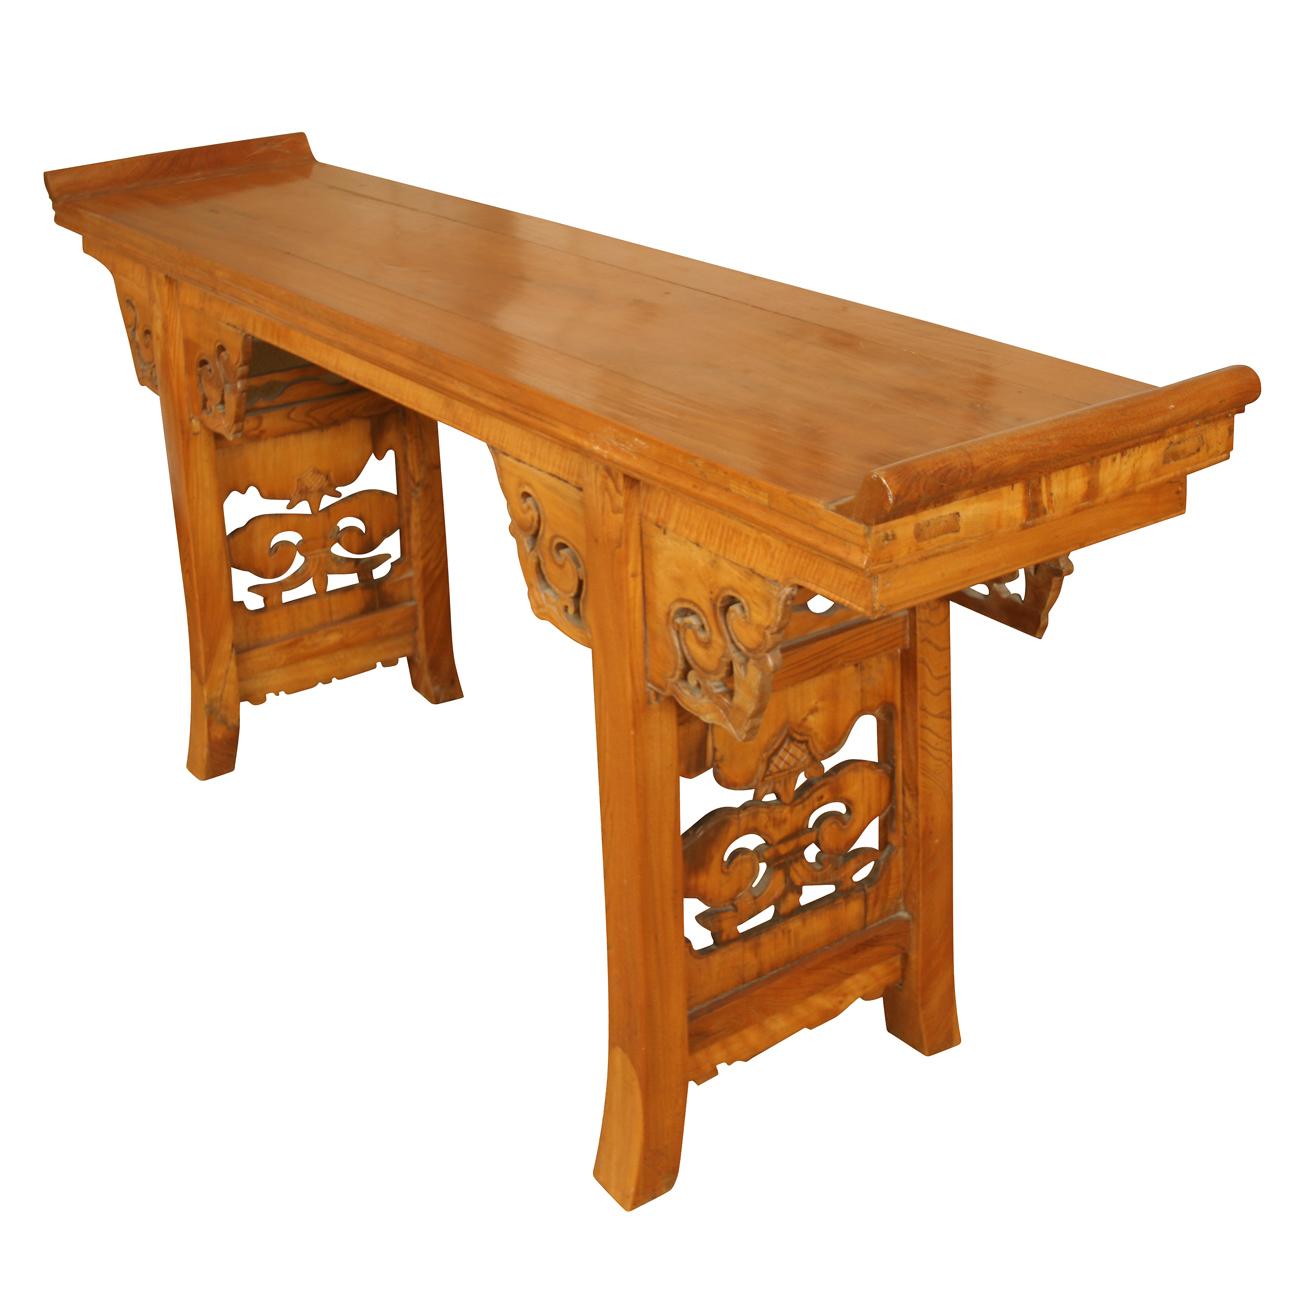 Grande table d'autel chinoise en bois d'orme avec des détails sculptés en volutes sur le tablier et les pieds.